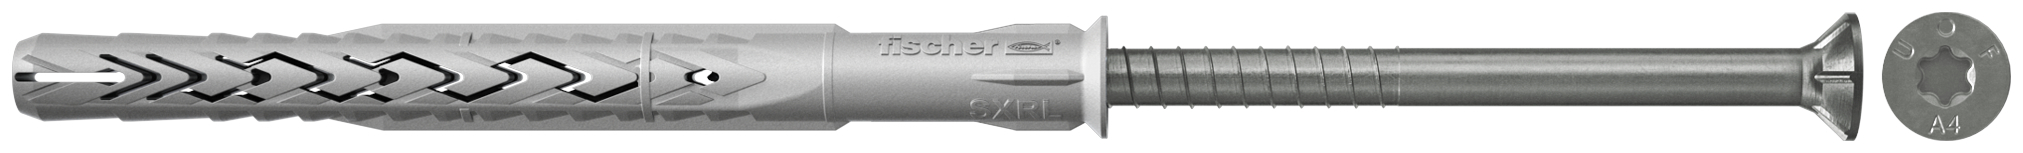 fischer Tasselli prolungati SXRL 8x100 T A4 (1 Pz.) Tassello prolungato in nylon con marcatura CE con vite premontata in acciaio inox A4, T.S.P. impronta torx fie3165